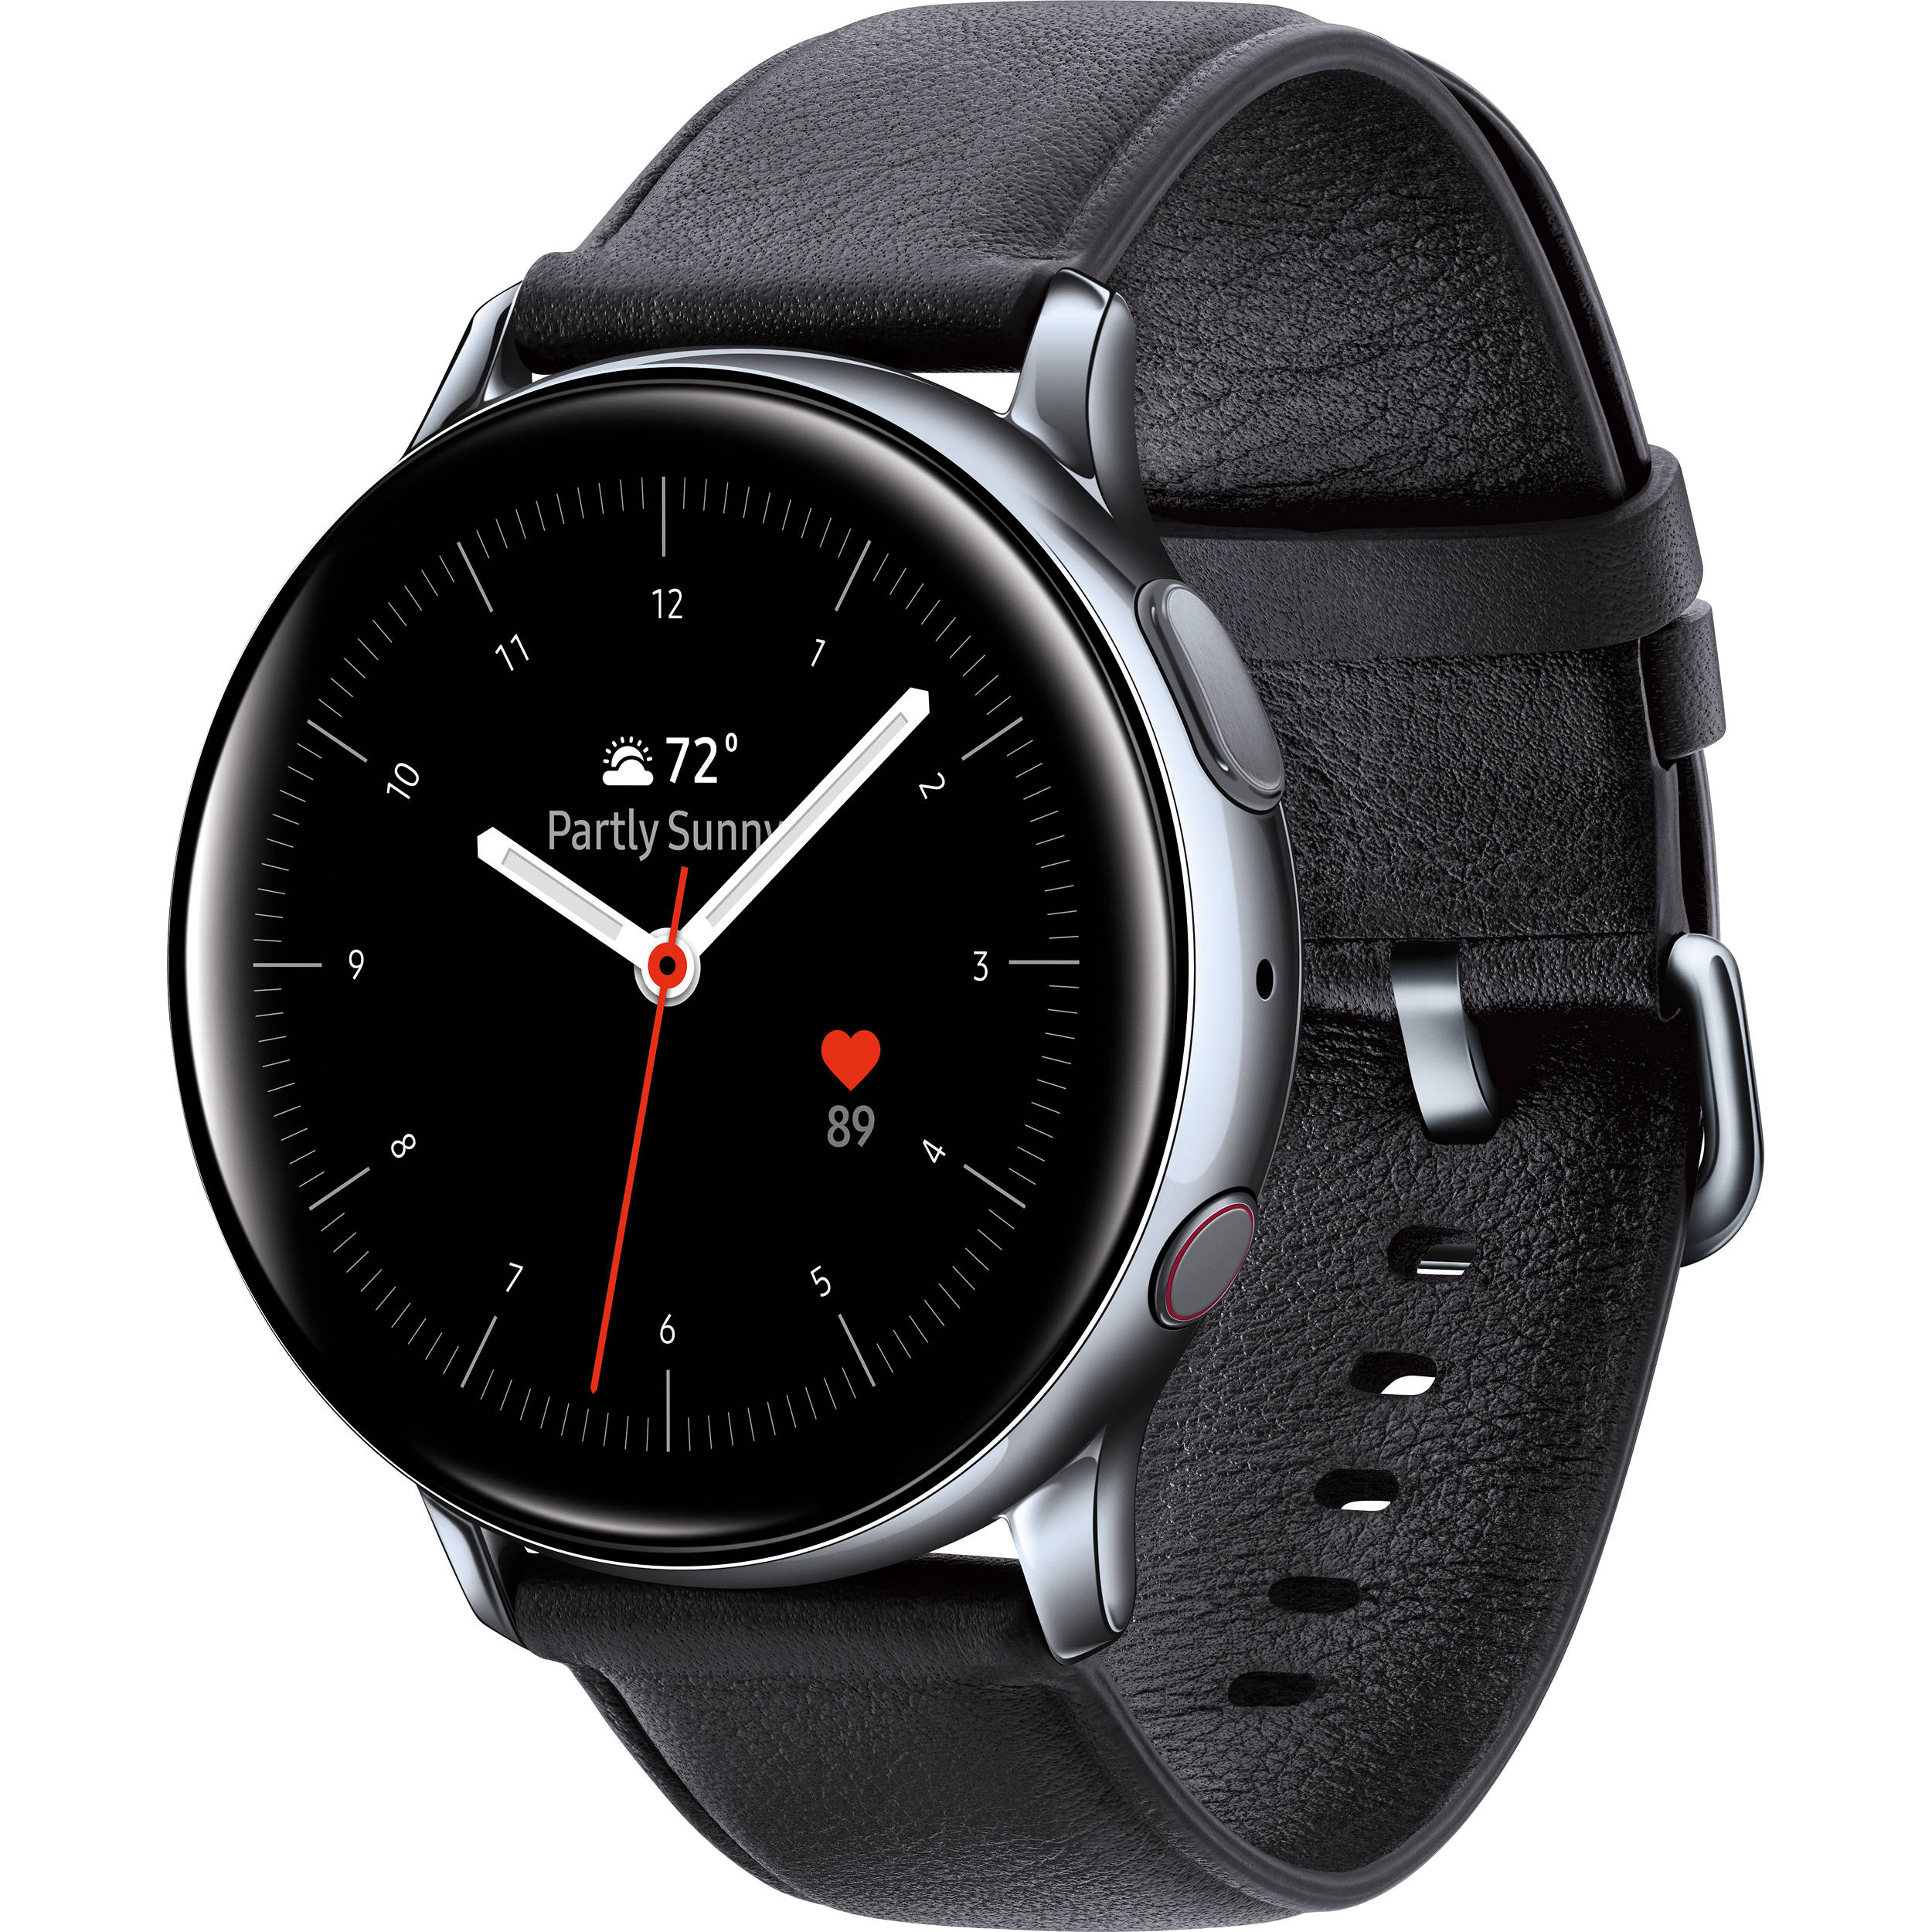 Samsung Galaxy Watch Active 2 do kupienia w promocji. Otrzymacie zwrot czci pienidzy